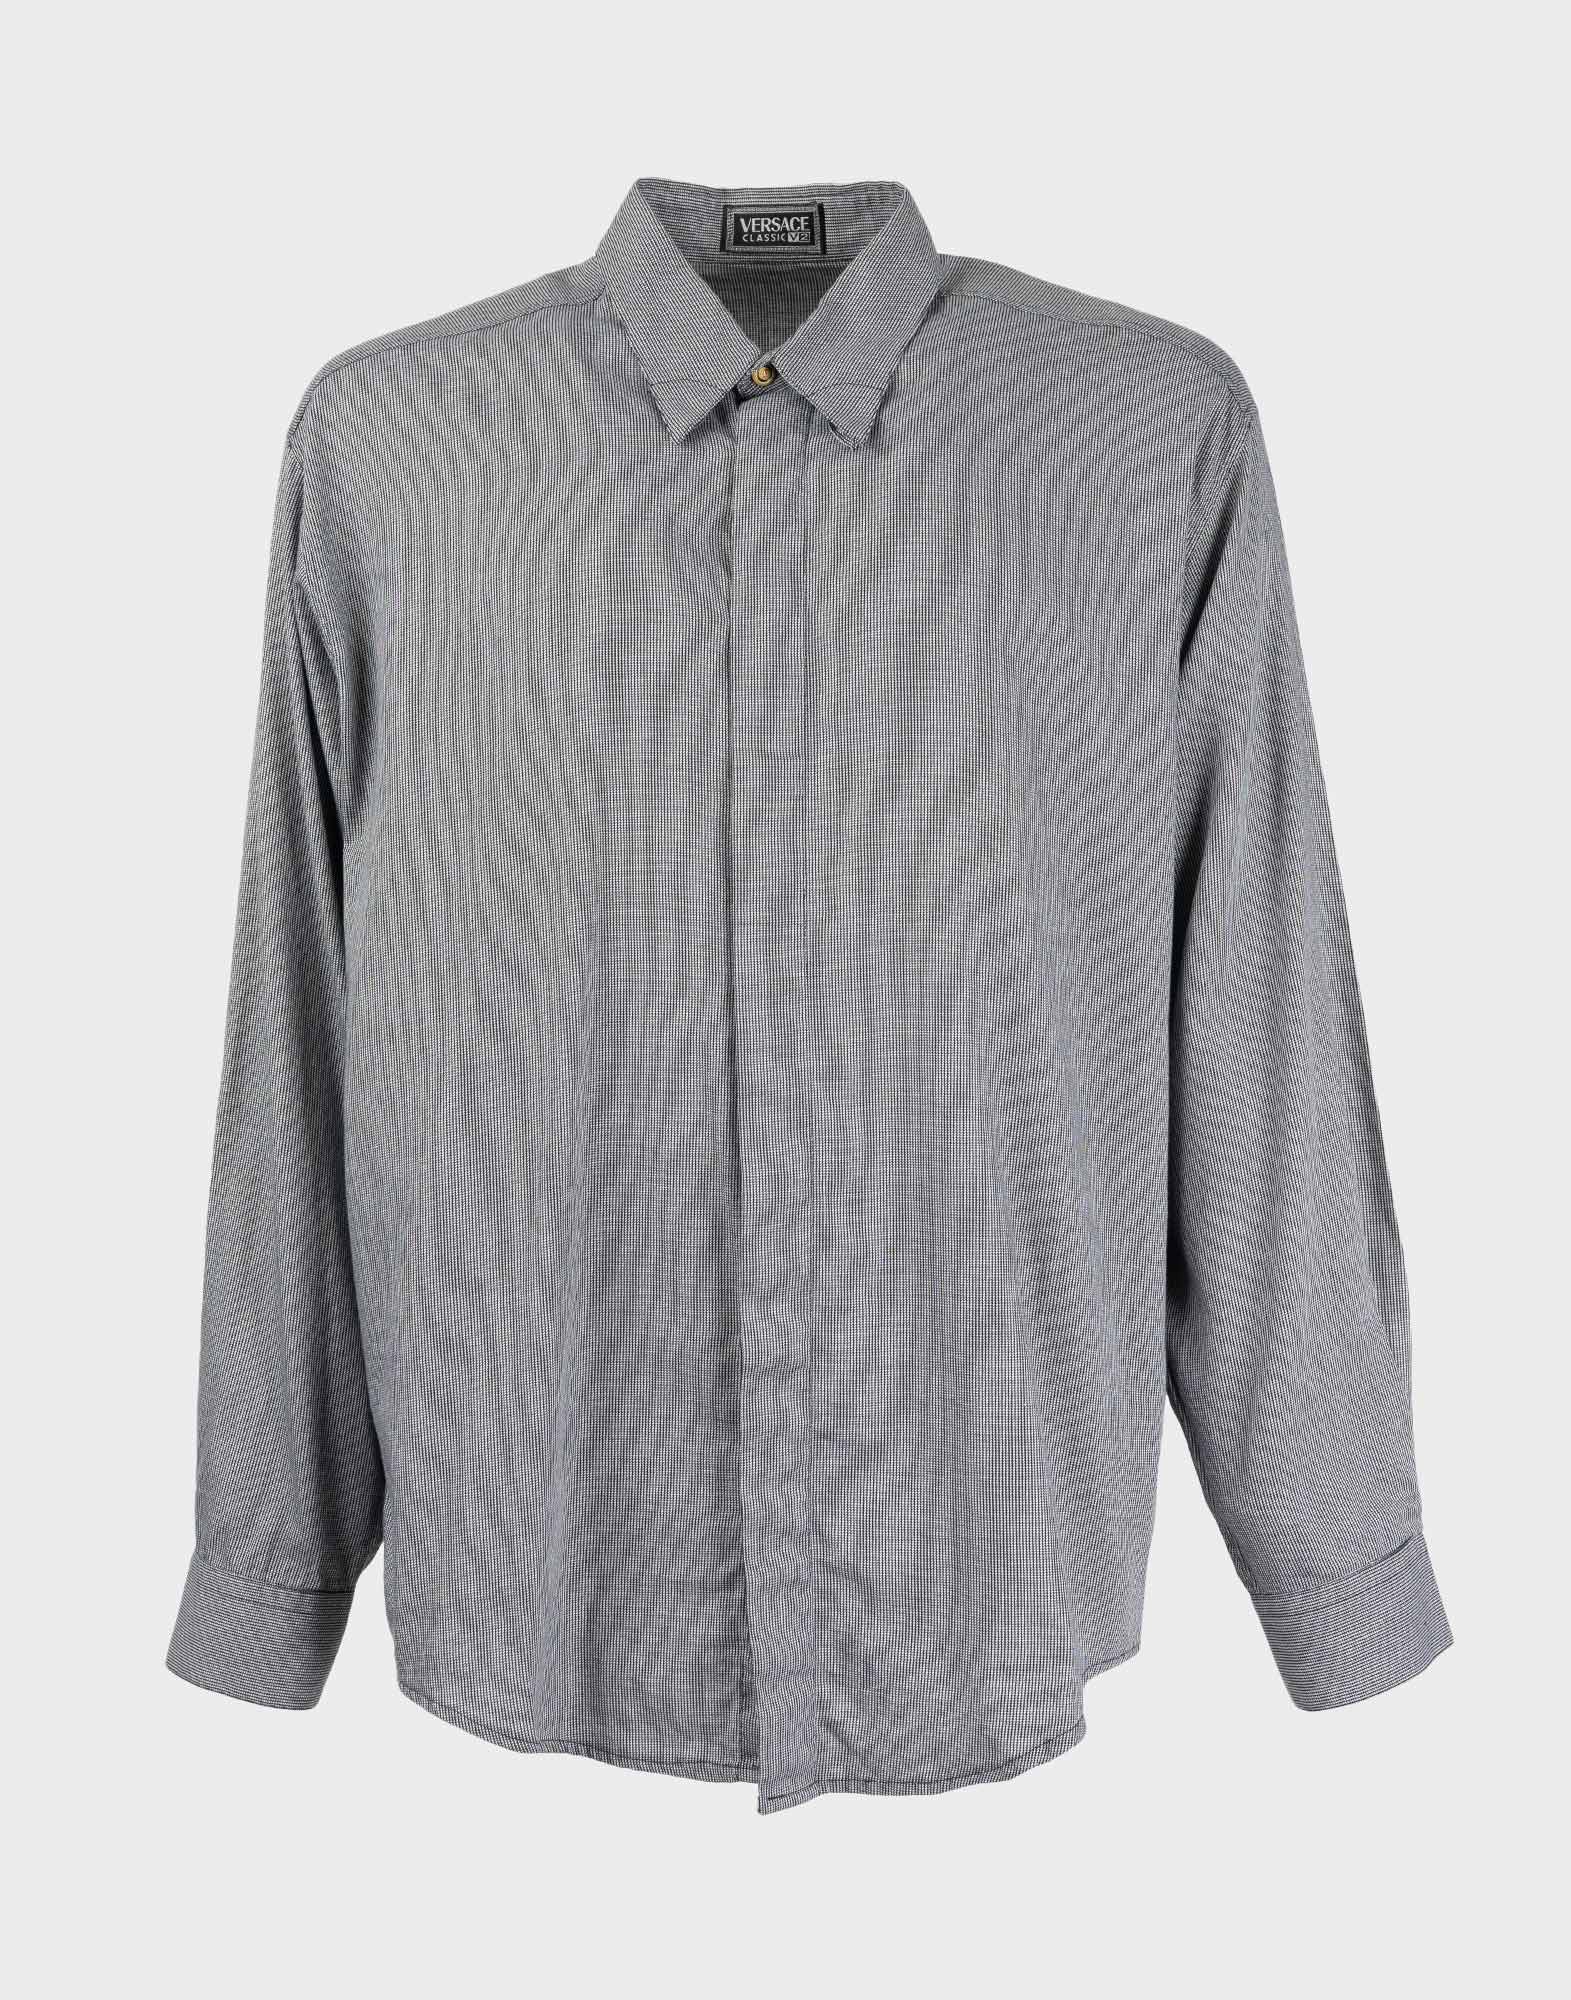 camicia da uomo in cotone grigia con fantasia a righe, maniche lunghe, chiusura anteriore con bottoni nascosti